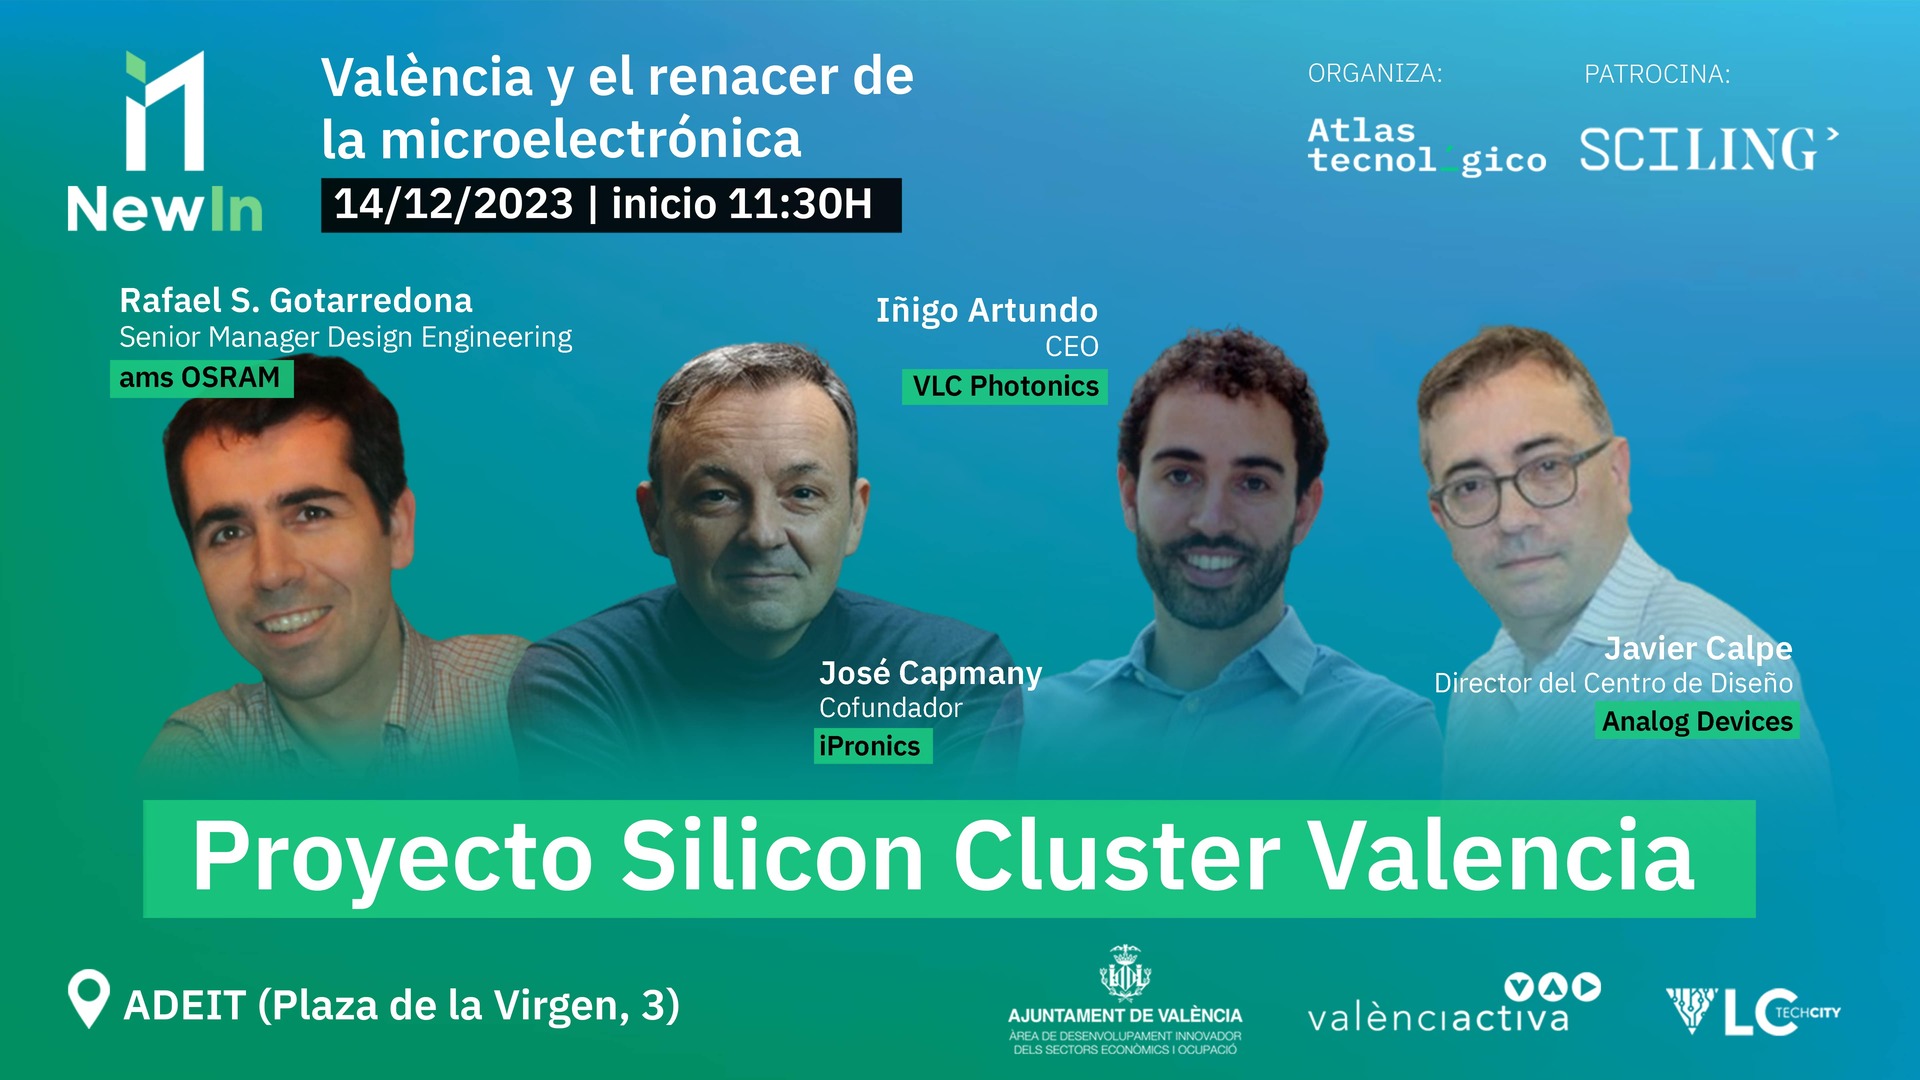 La élite de la microelectrónica en New in Valencia: VLC Photonics, Analog Devices, ams OSRAM e iPronics llevan a sus ‘estrellas’